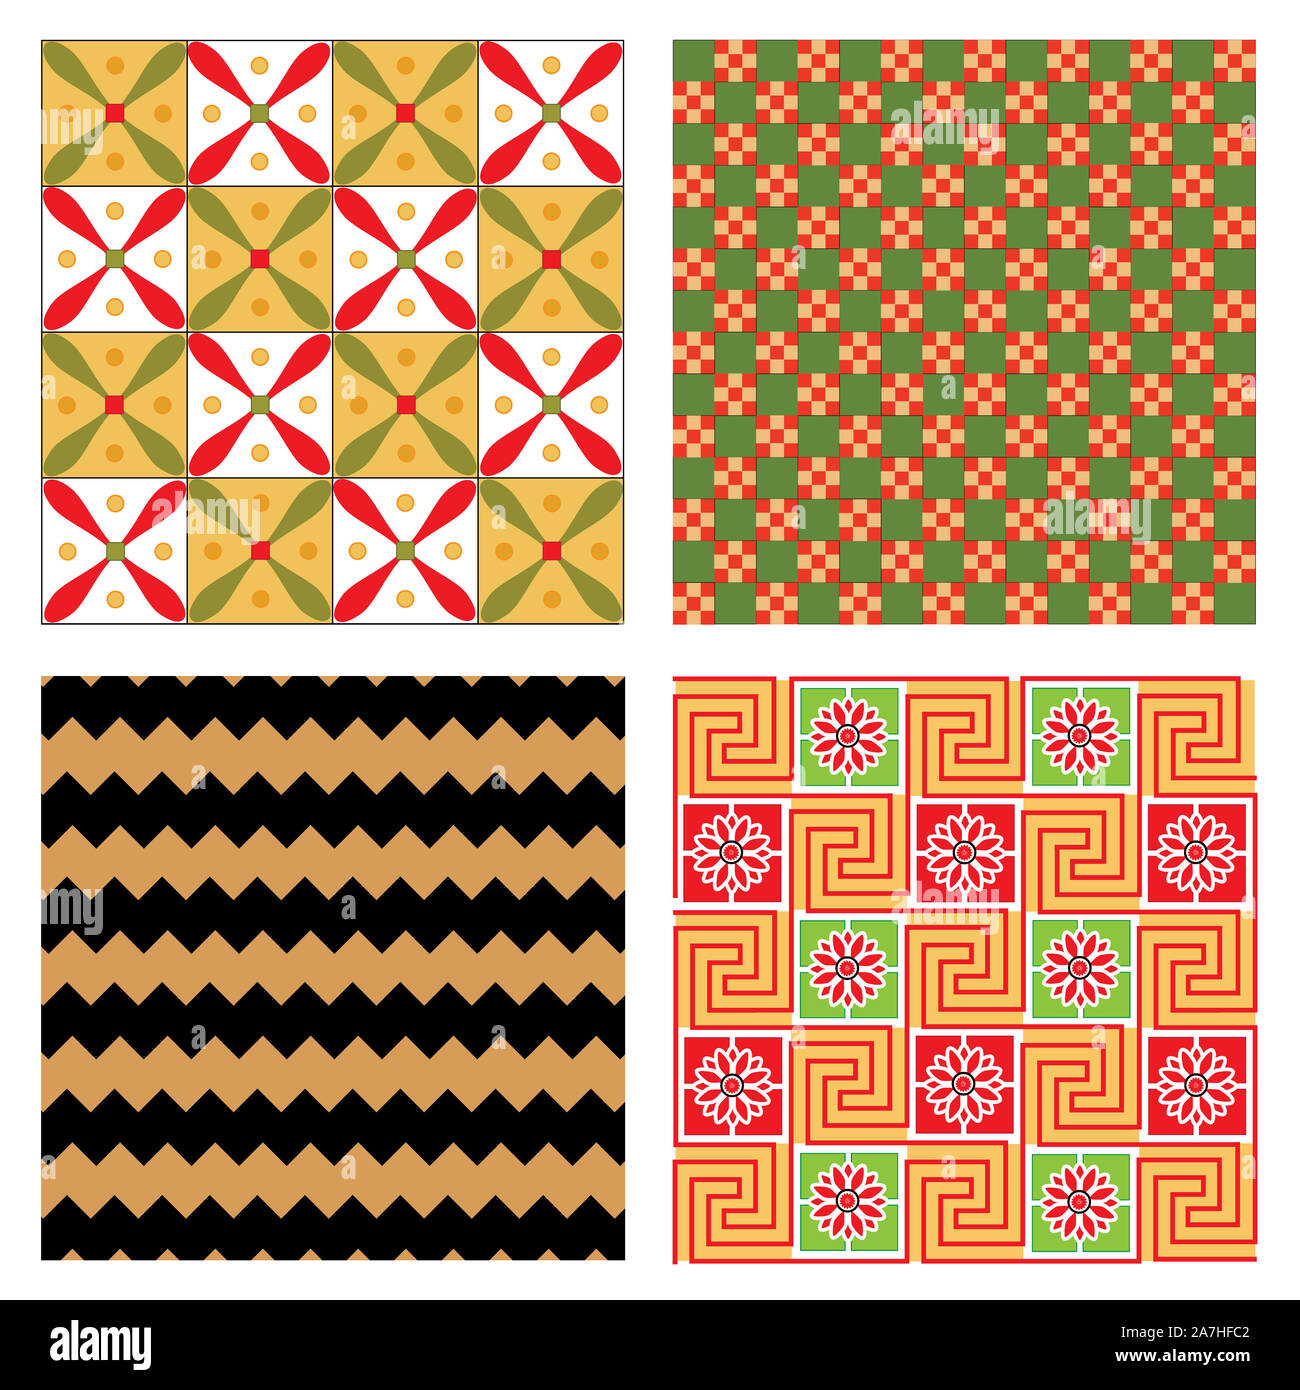 Ägypten nationalen Ornament pattern Volume 5. Ägyptische dekorative textile Elemente Hintergrund. Die afrikanische Kultur Stoff Design. Stockfoto